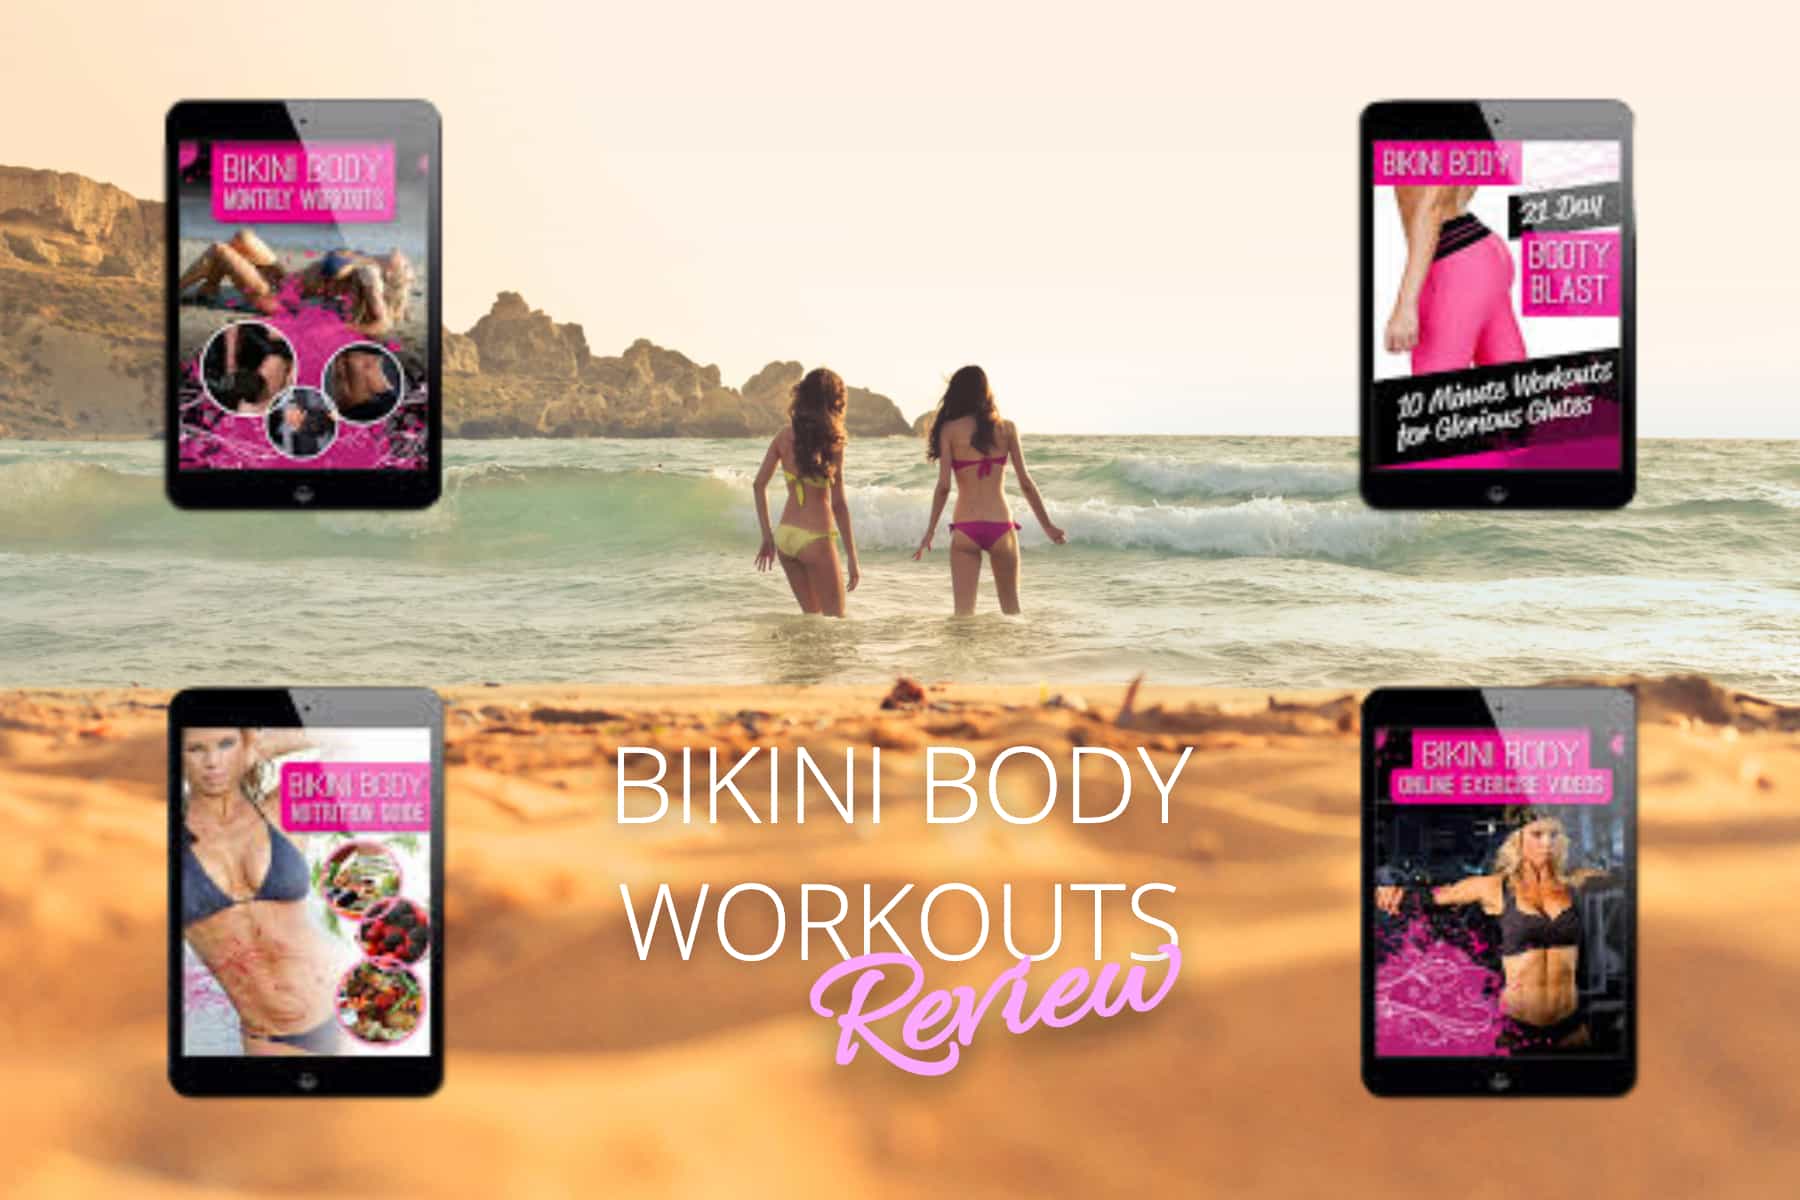 Bikini Body Workouts Review